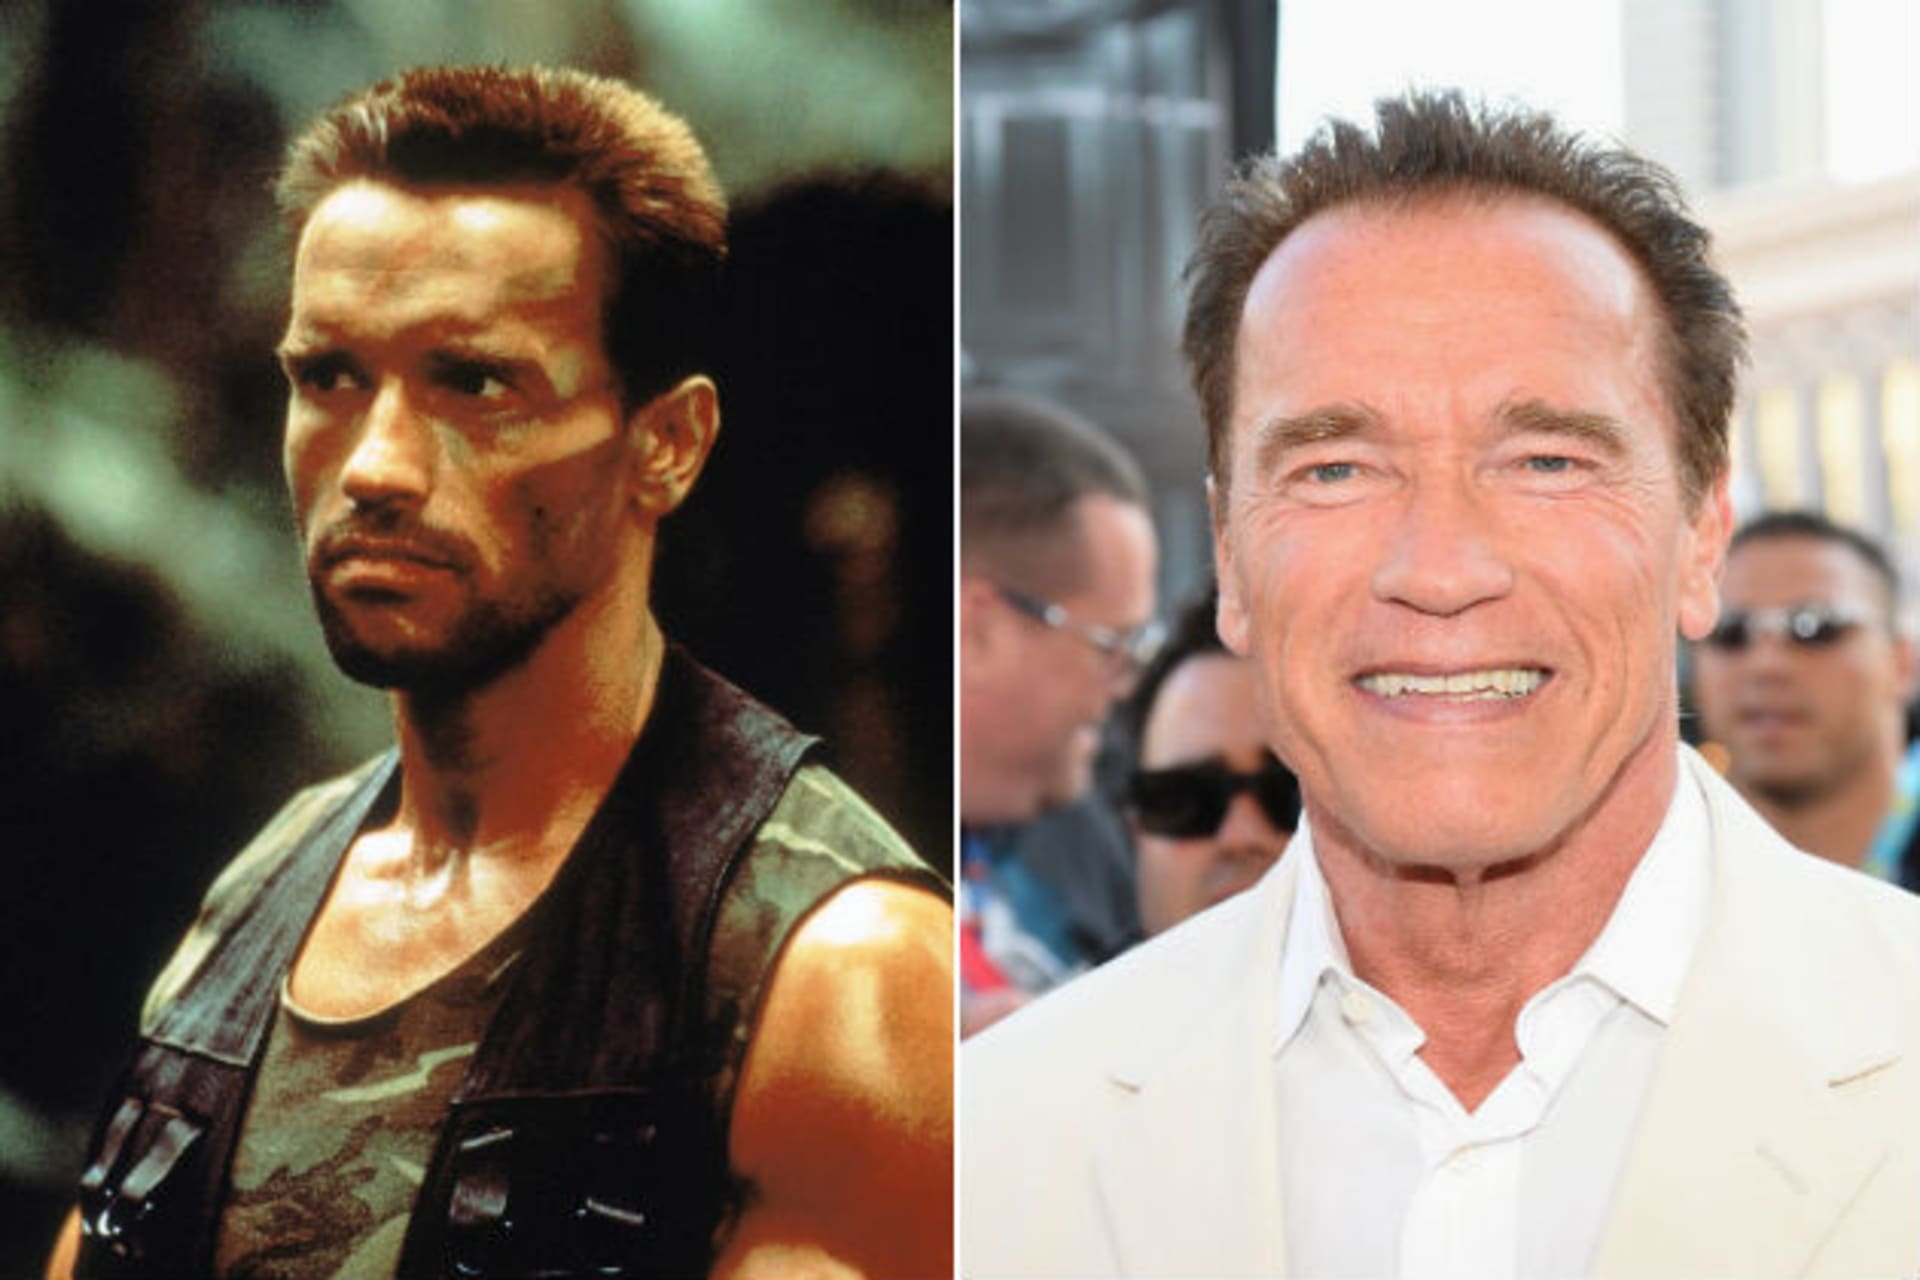 Arnold Schwarzenegger tehdy a dnes...